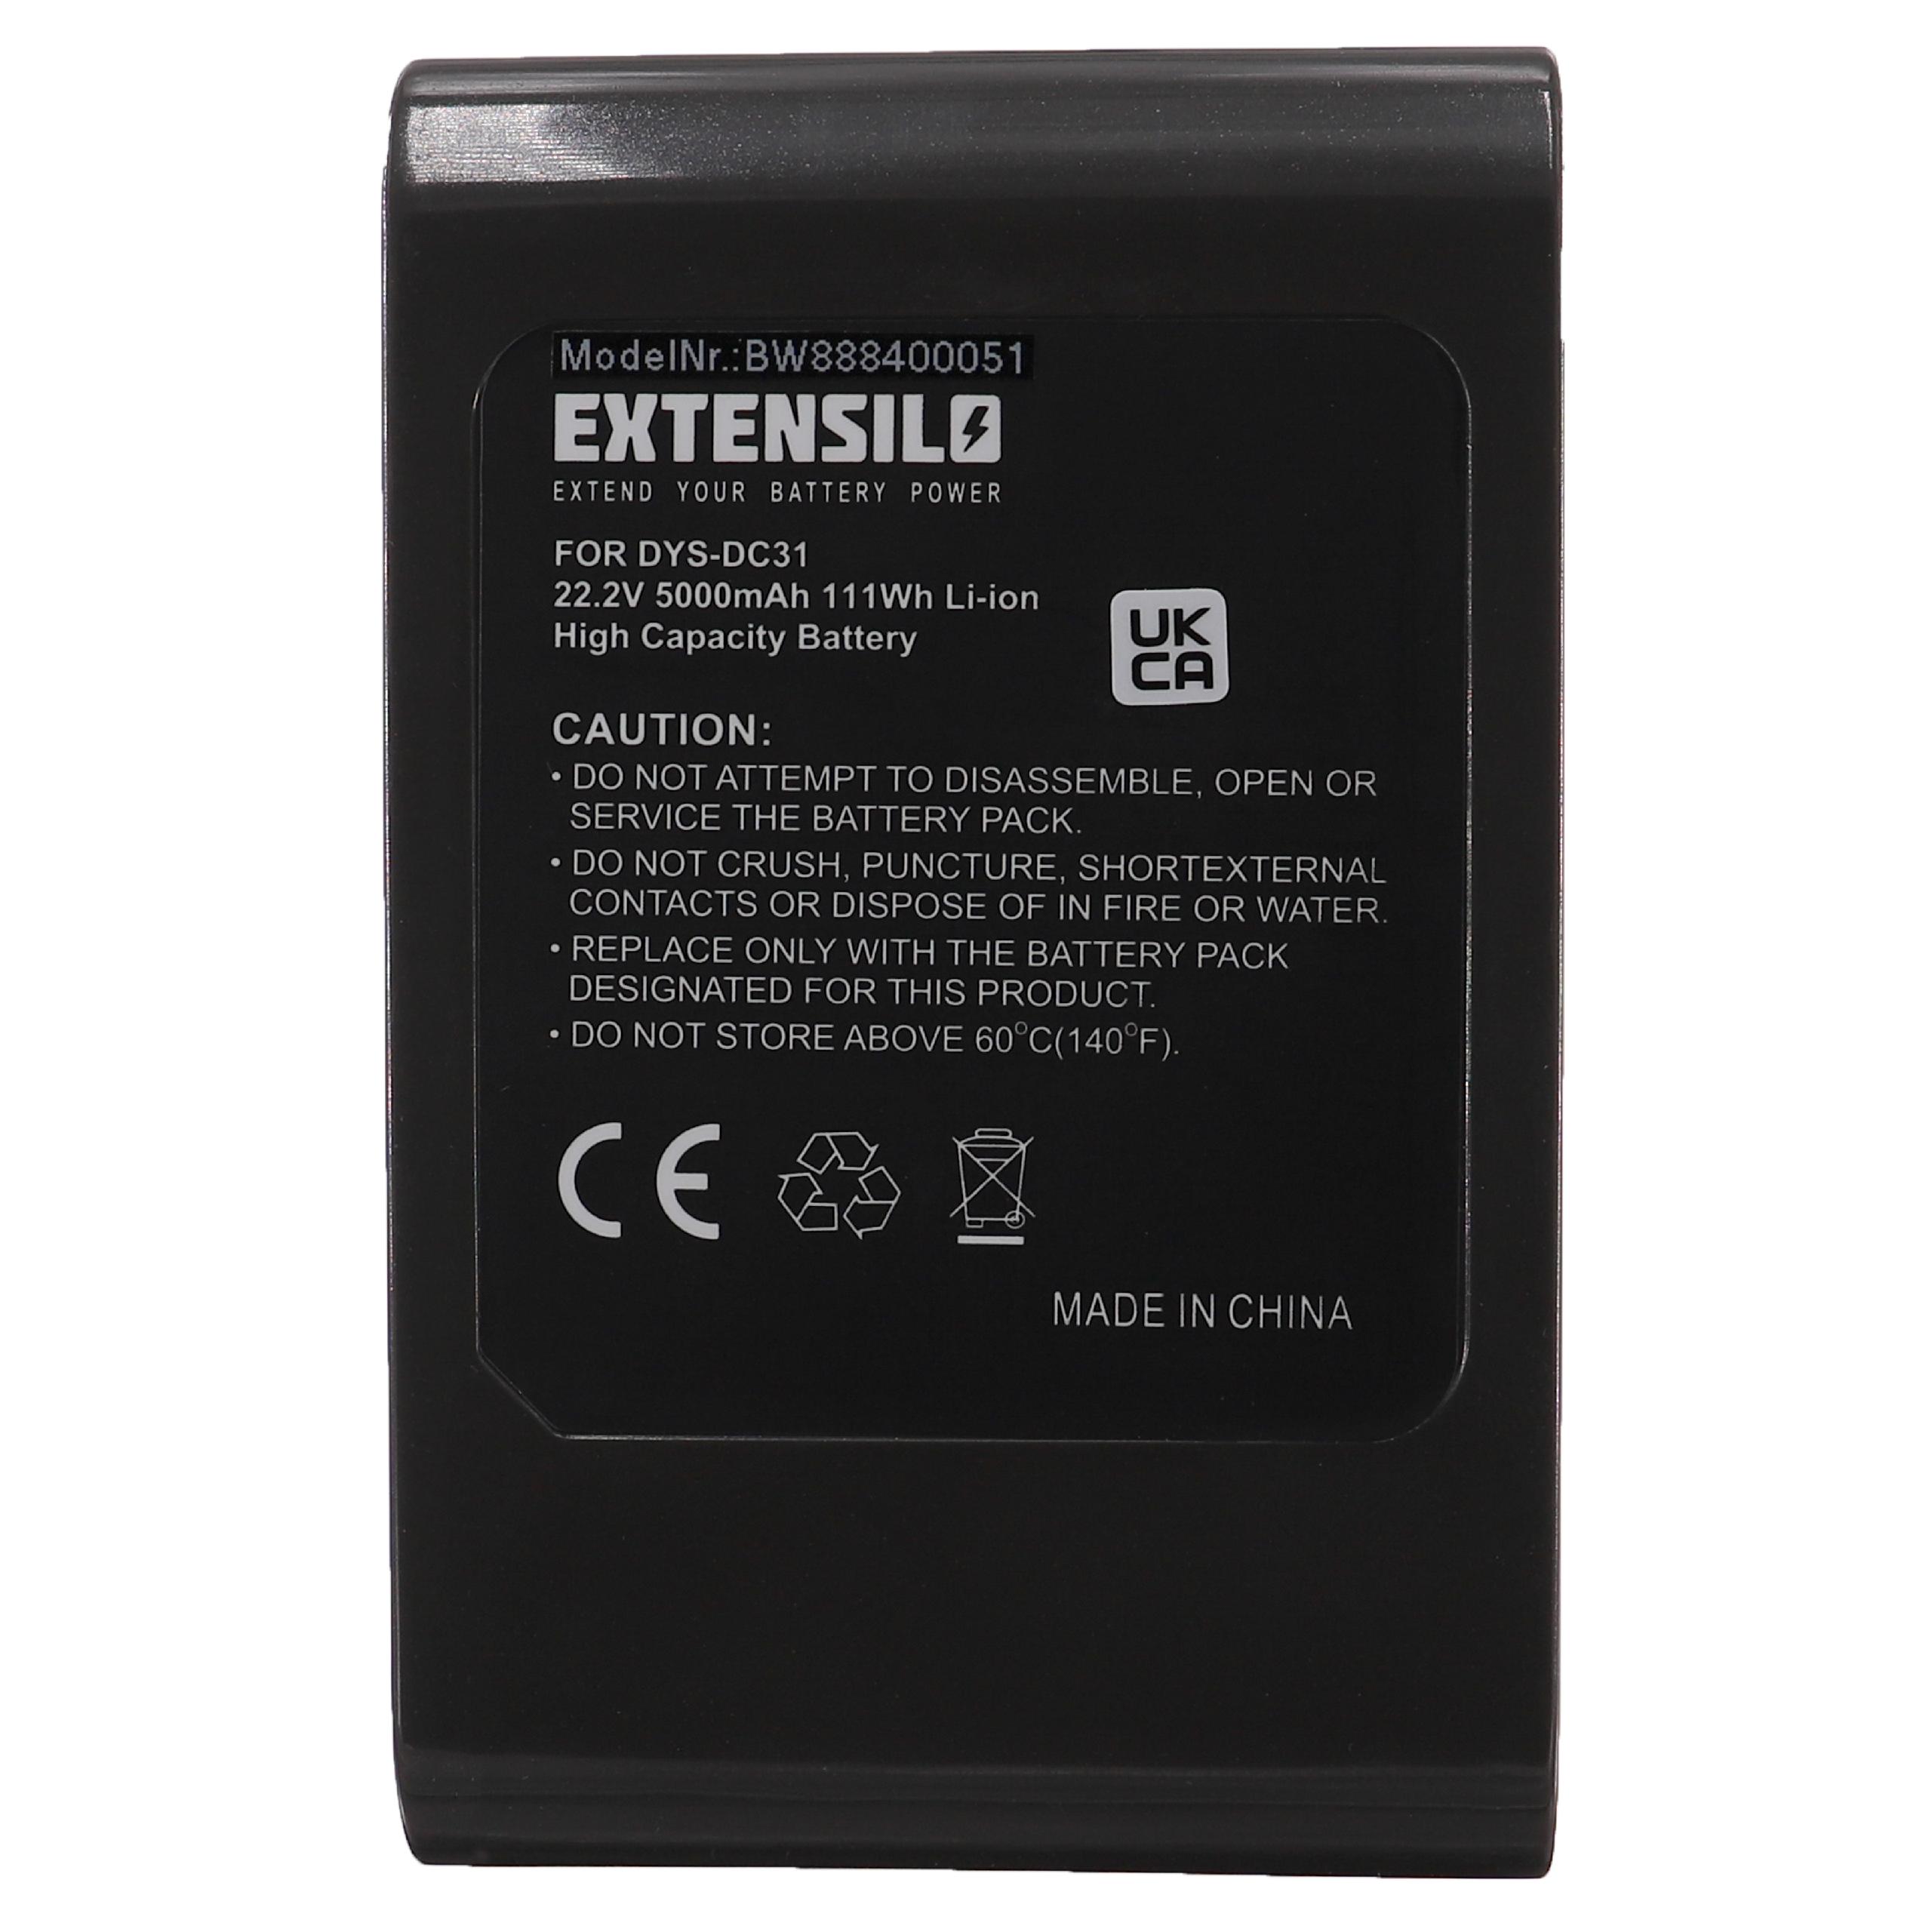 Extensilo Batterie remplace Dyson 17083-3009, 17083-3511 pour aspirateur - 5000mAh 22,2V Li-ion, noir